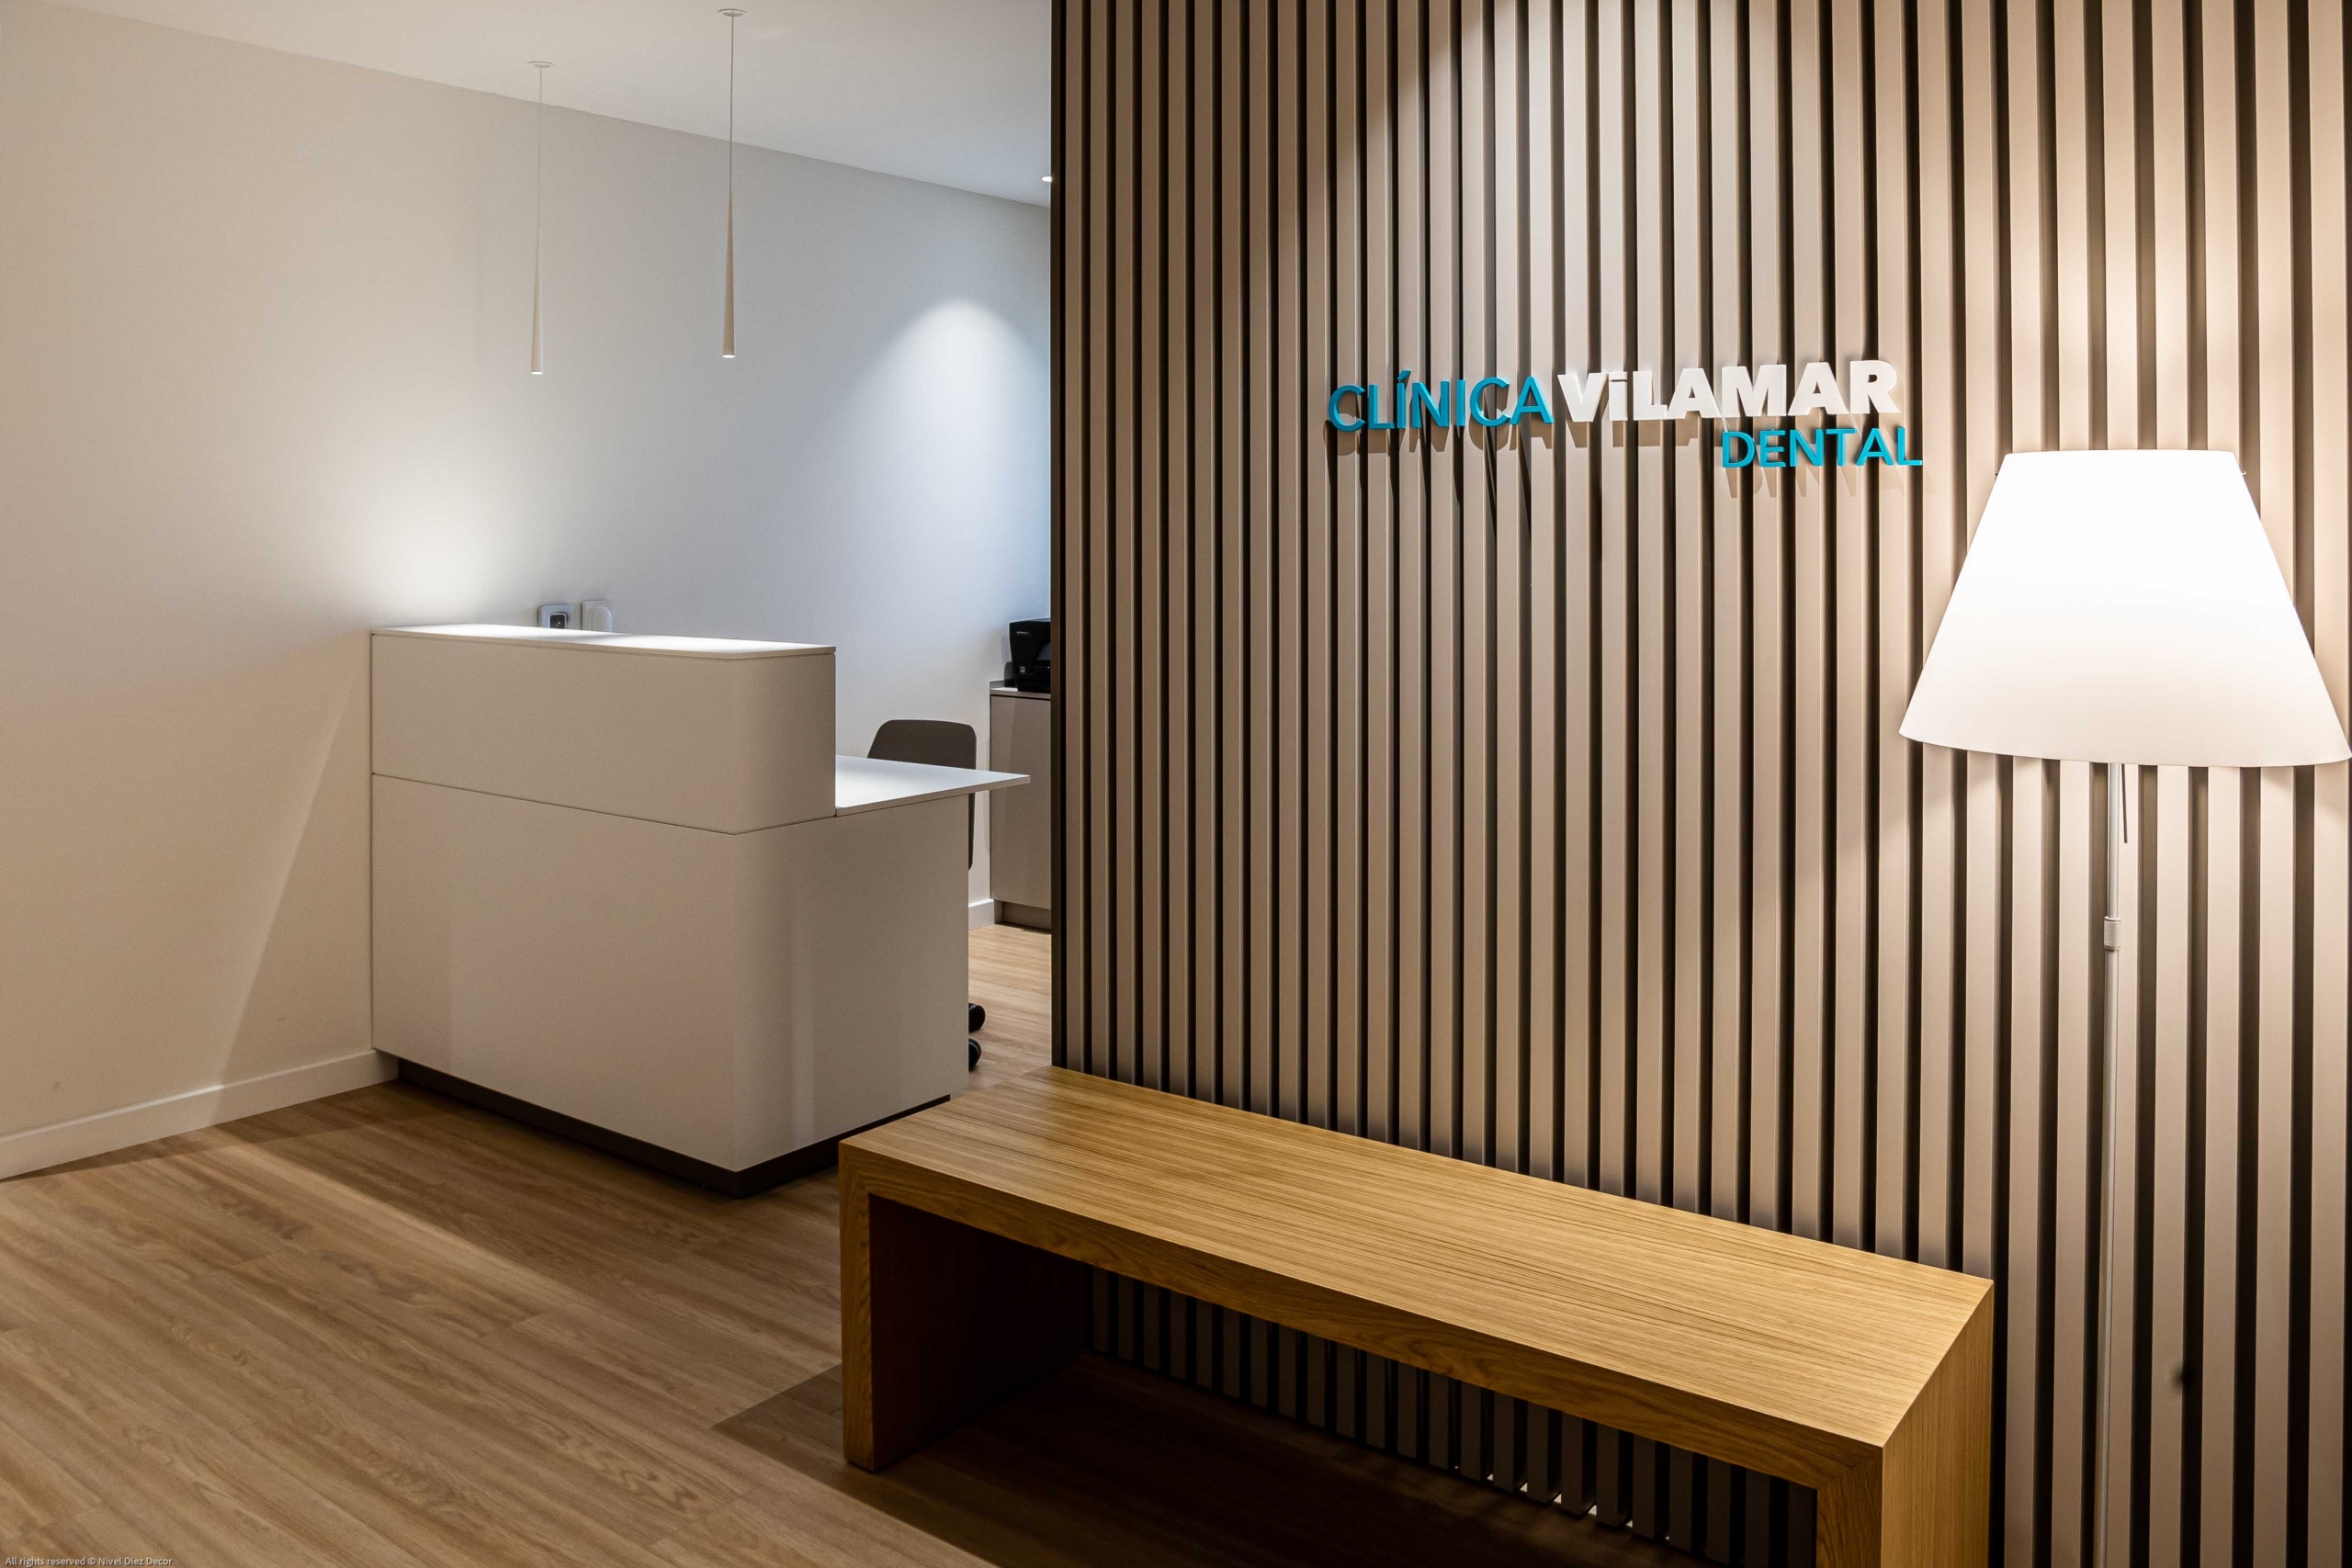 Sala de recepcion con nombre Clinica Vilamar con acabados blancos y de madera